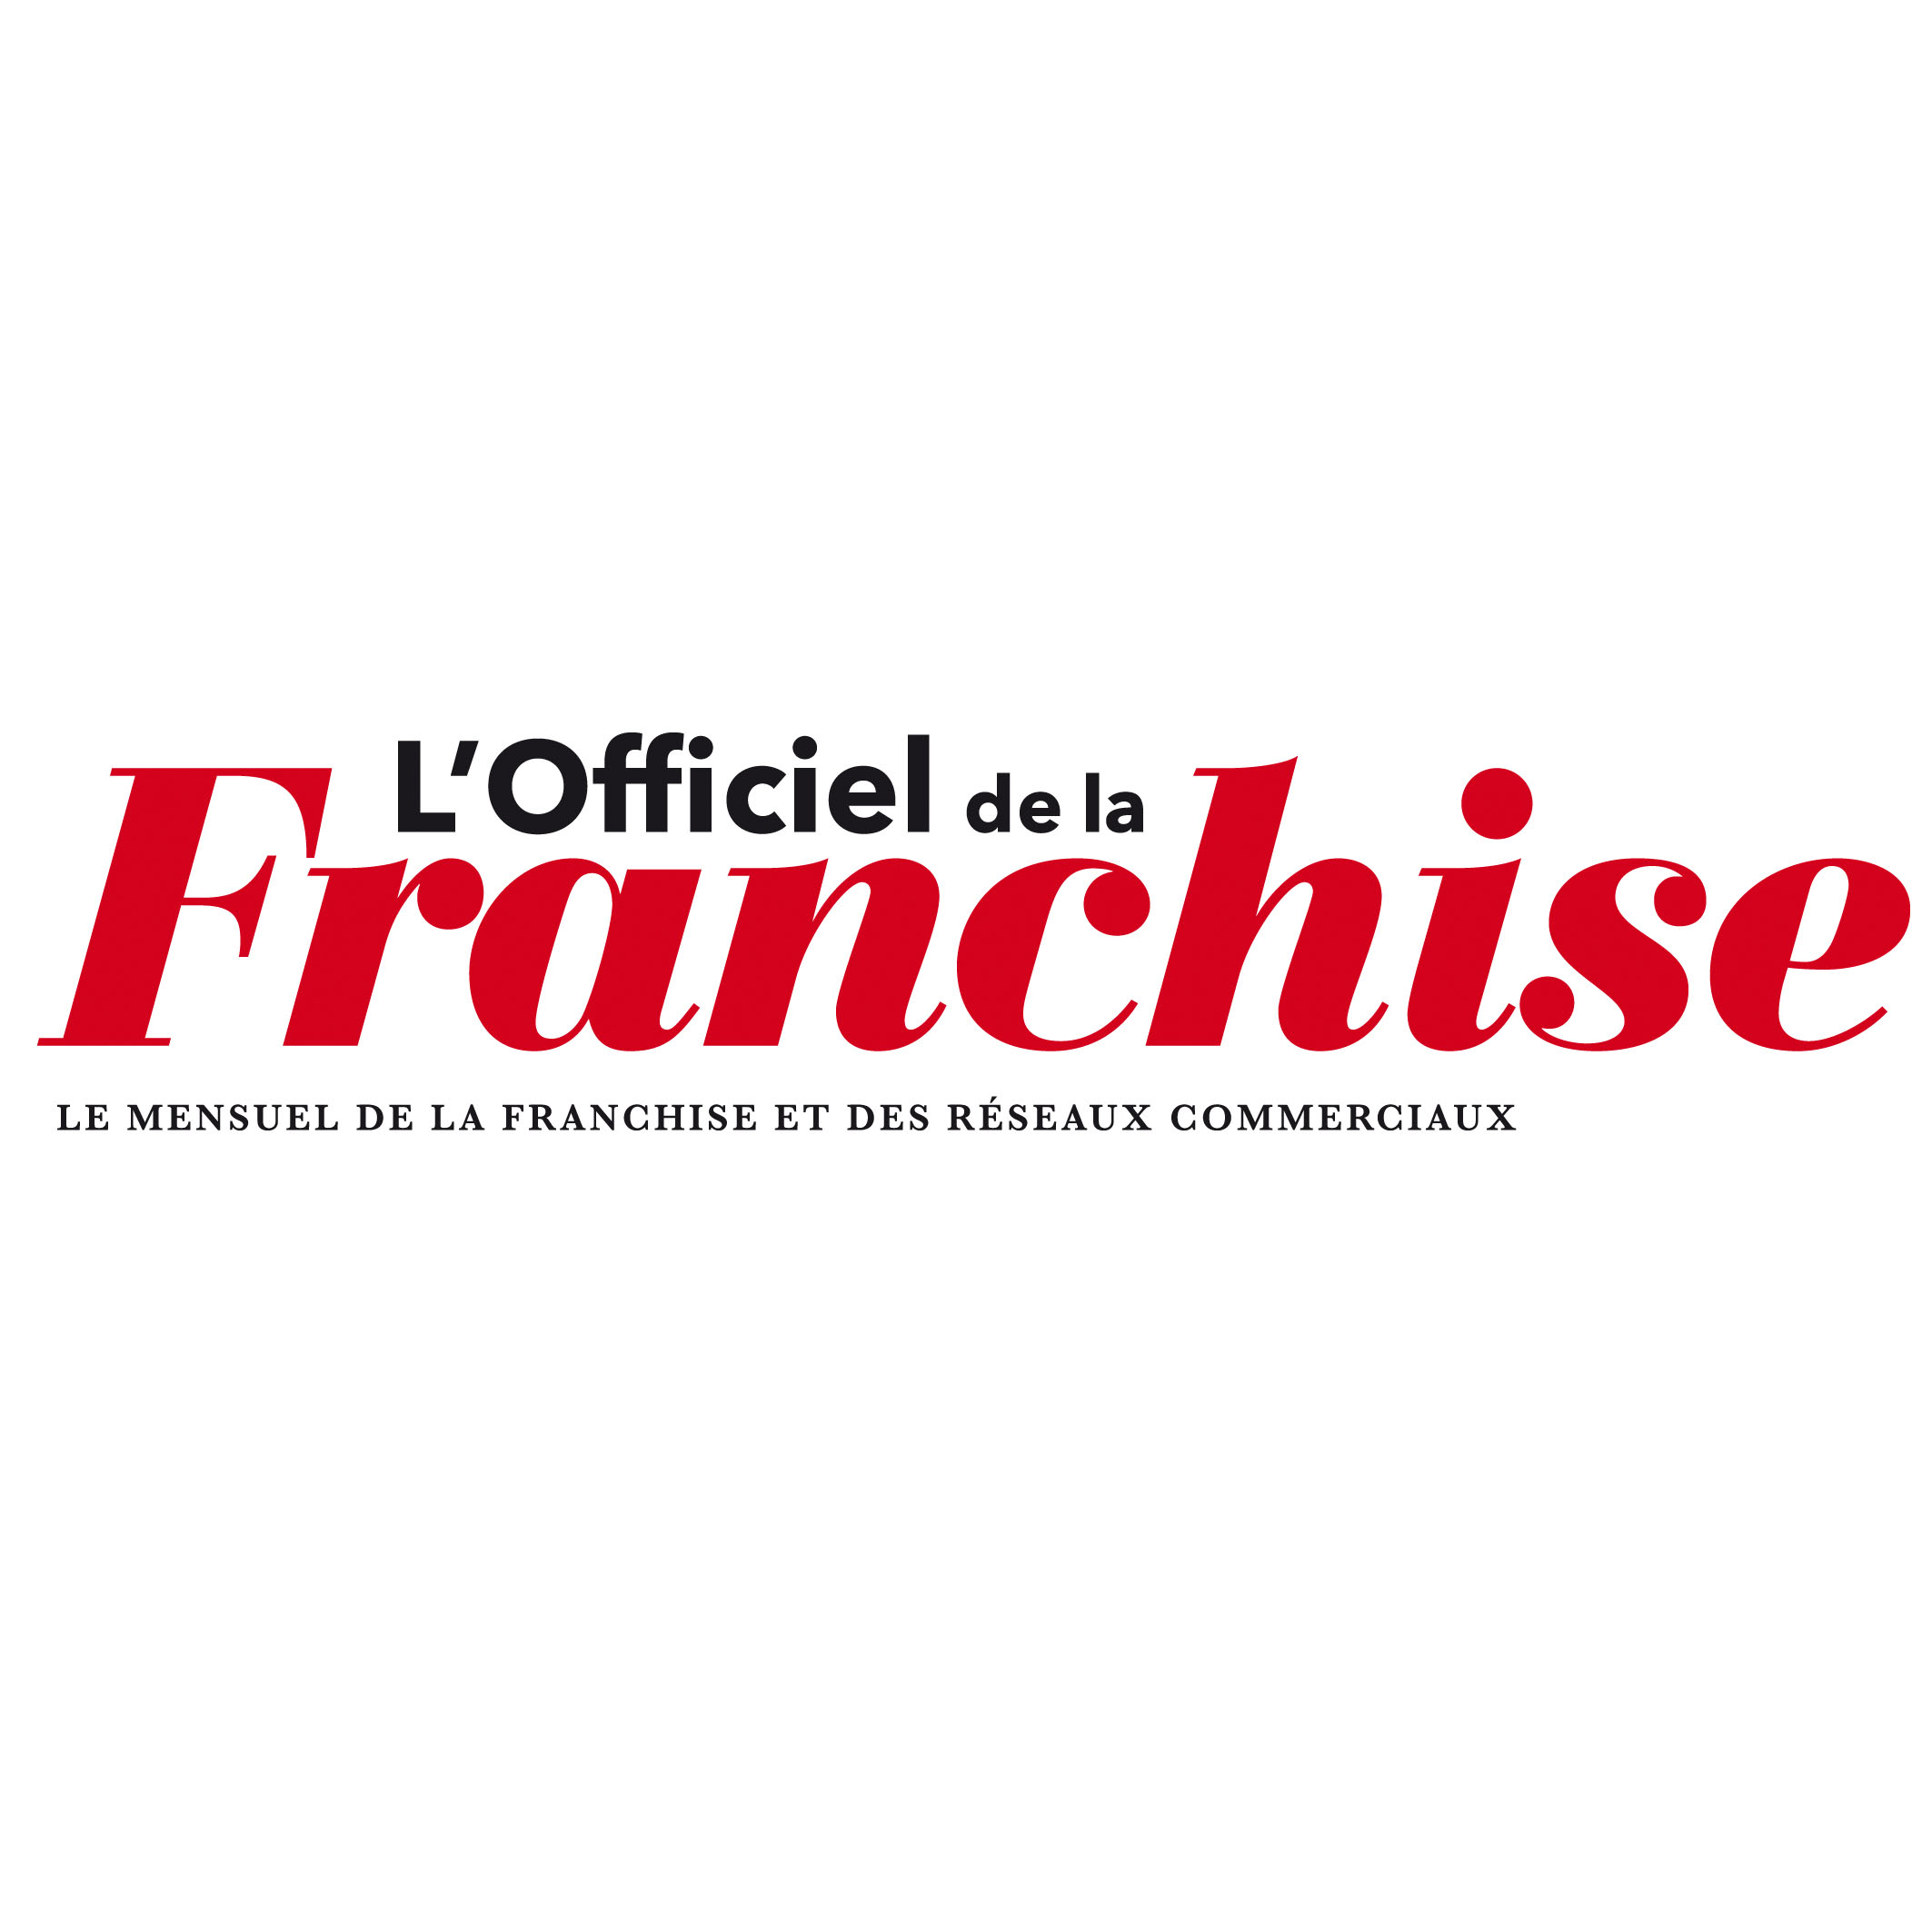 Chroniques de jurisprudence de la franchise (l'Officiel de la Franchise - Déc. 2012 - janv. 2013)